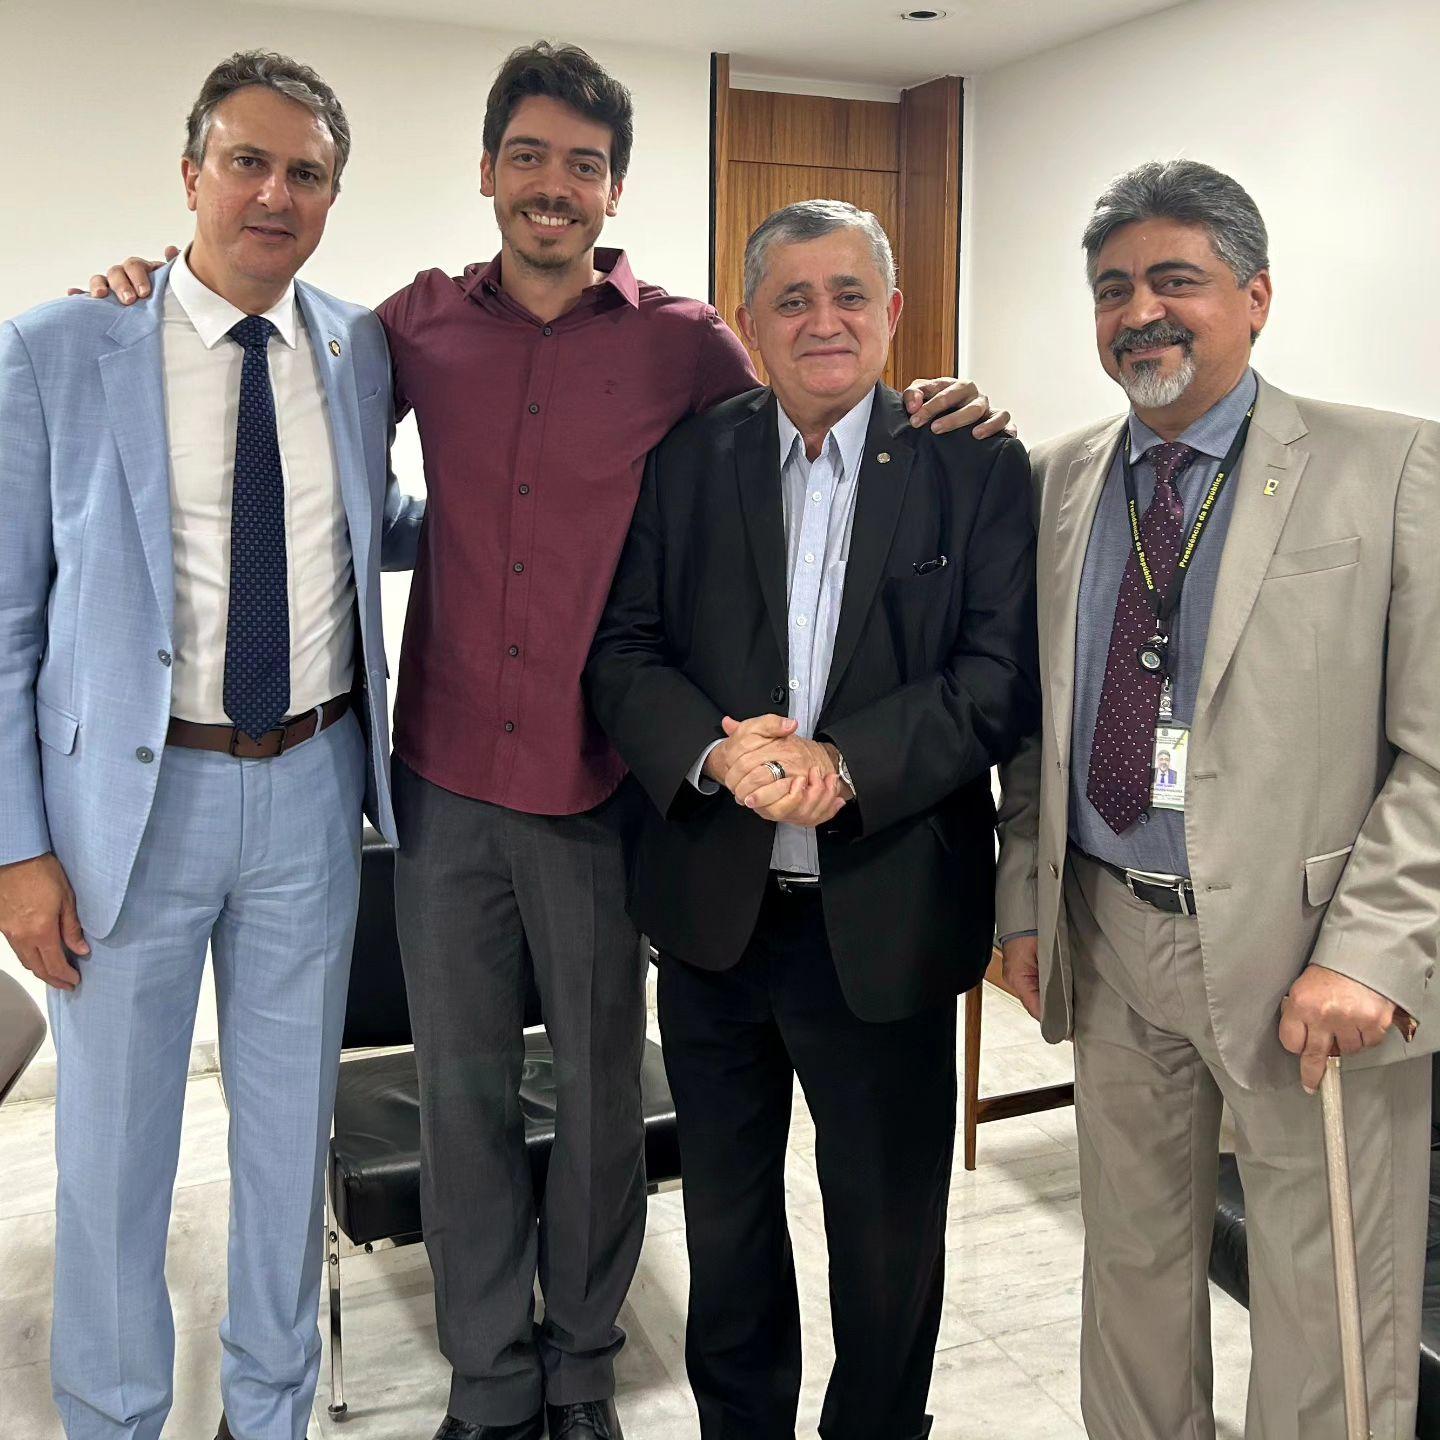 Da esquerda para a direita: ministro Camilo Santana, professor Victor Marques, deputado federal José Guimarães e assessor do Governo Federal Ilário Marques.